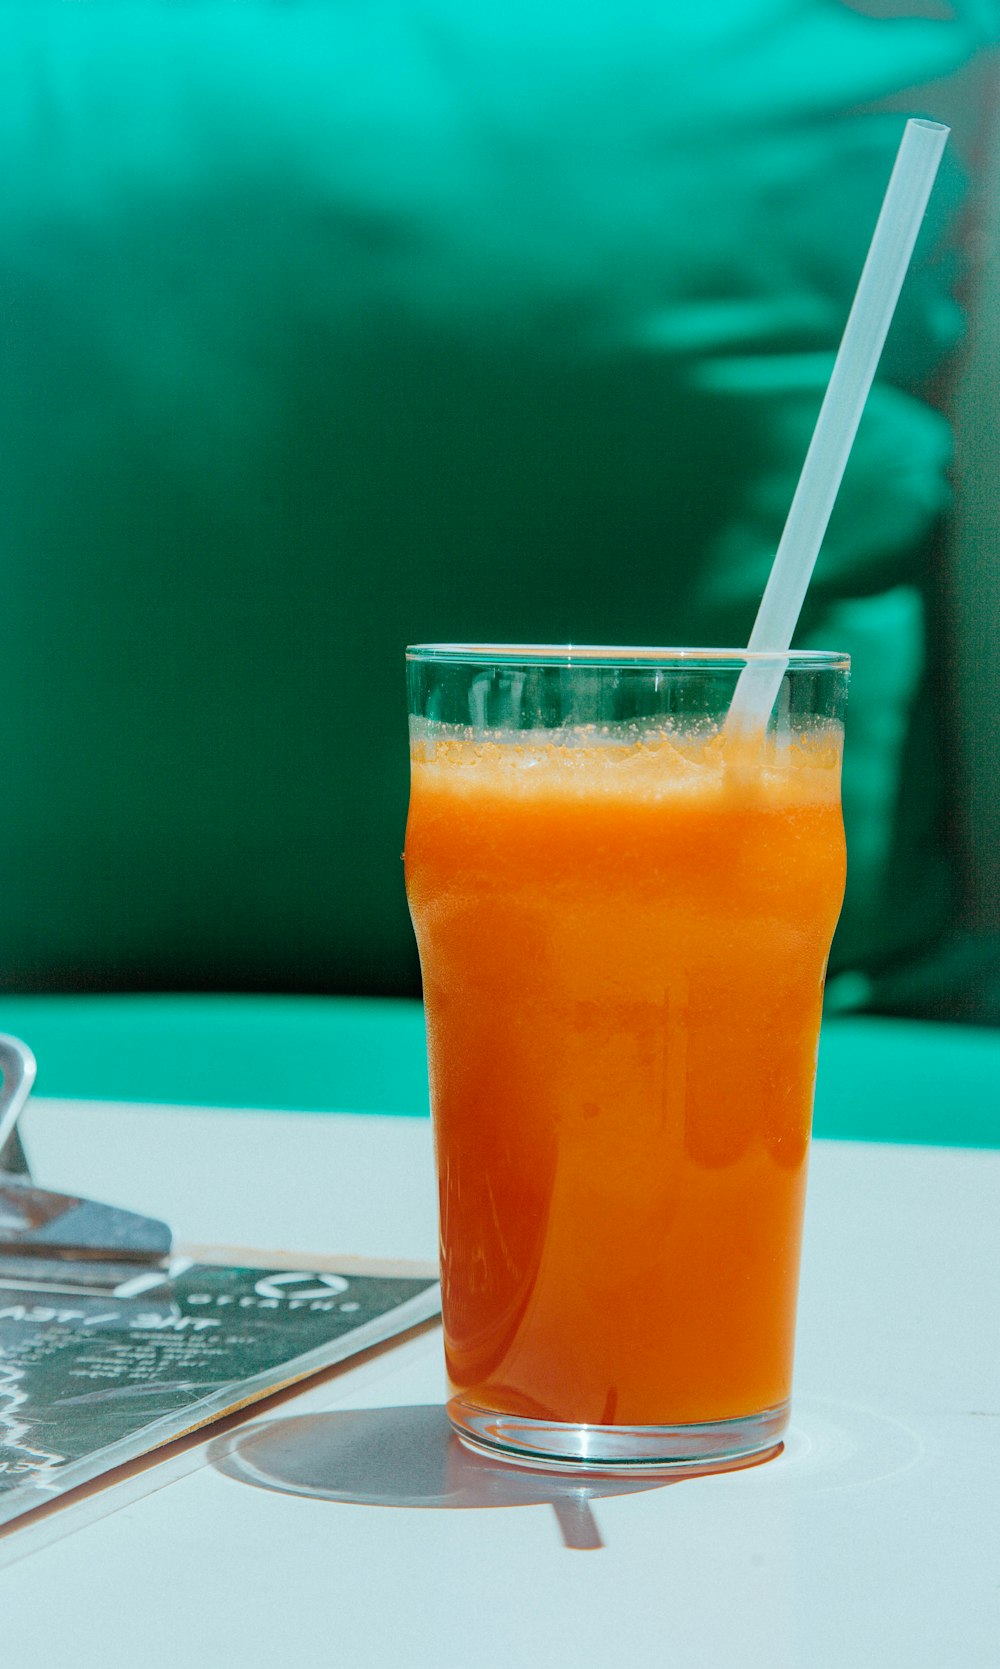 オレンジジュース入り透明なコップ